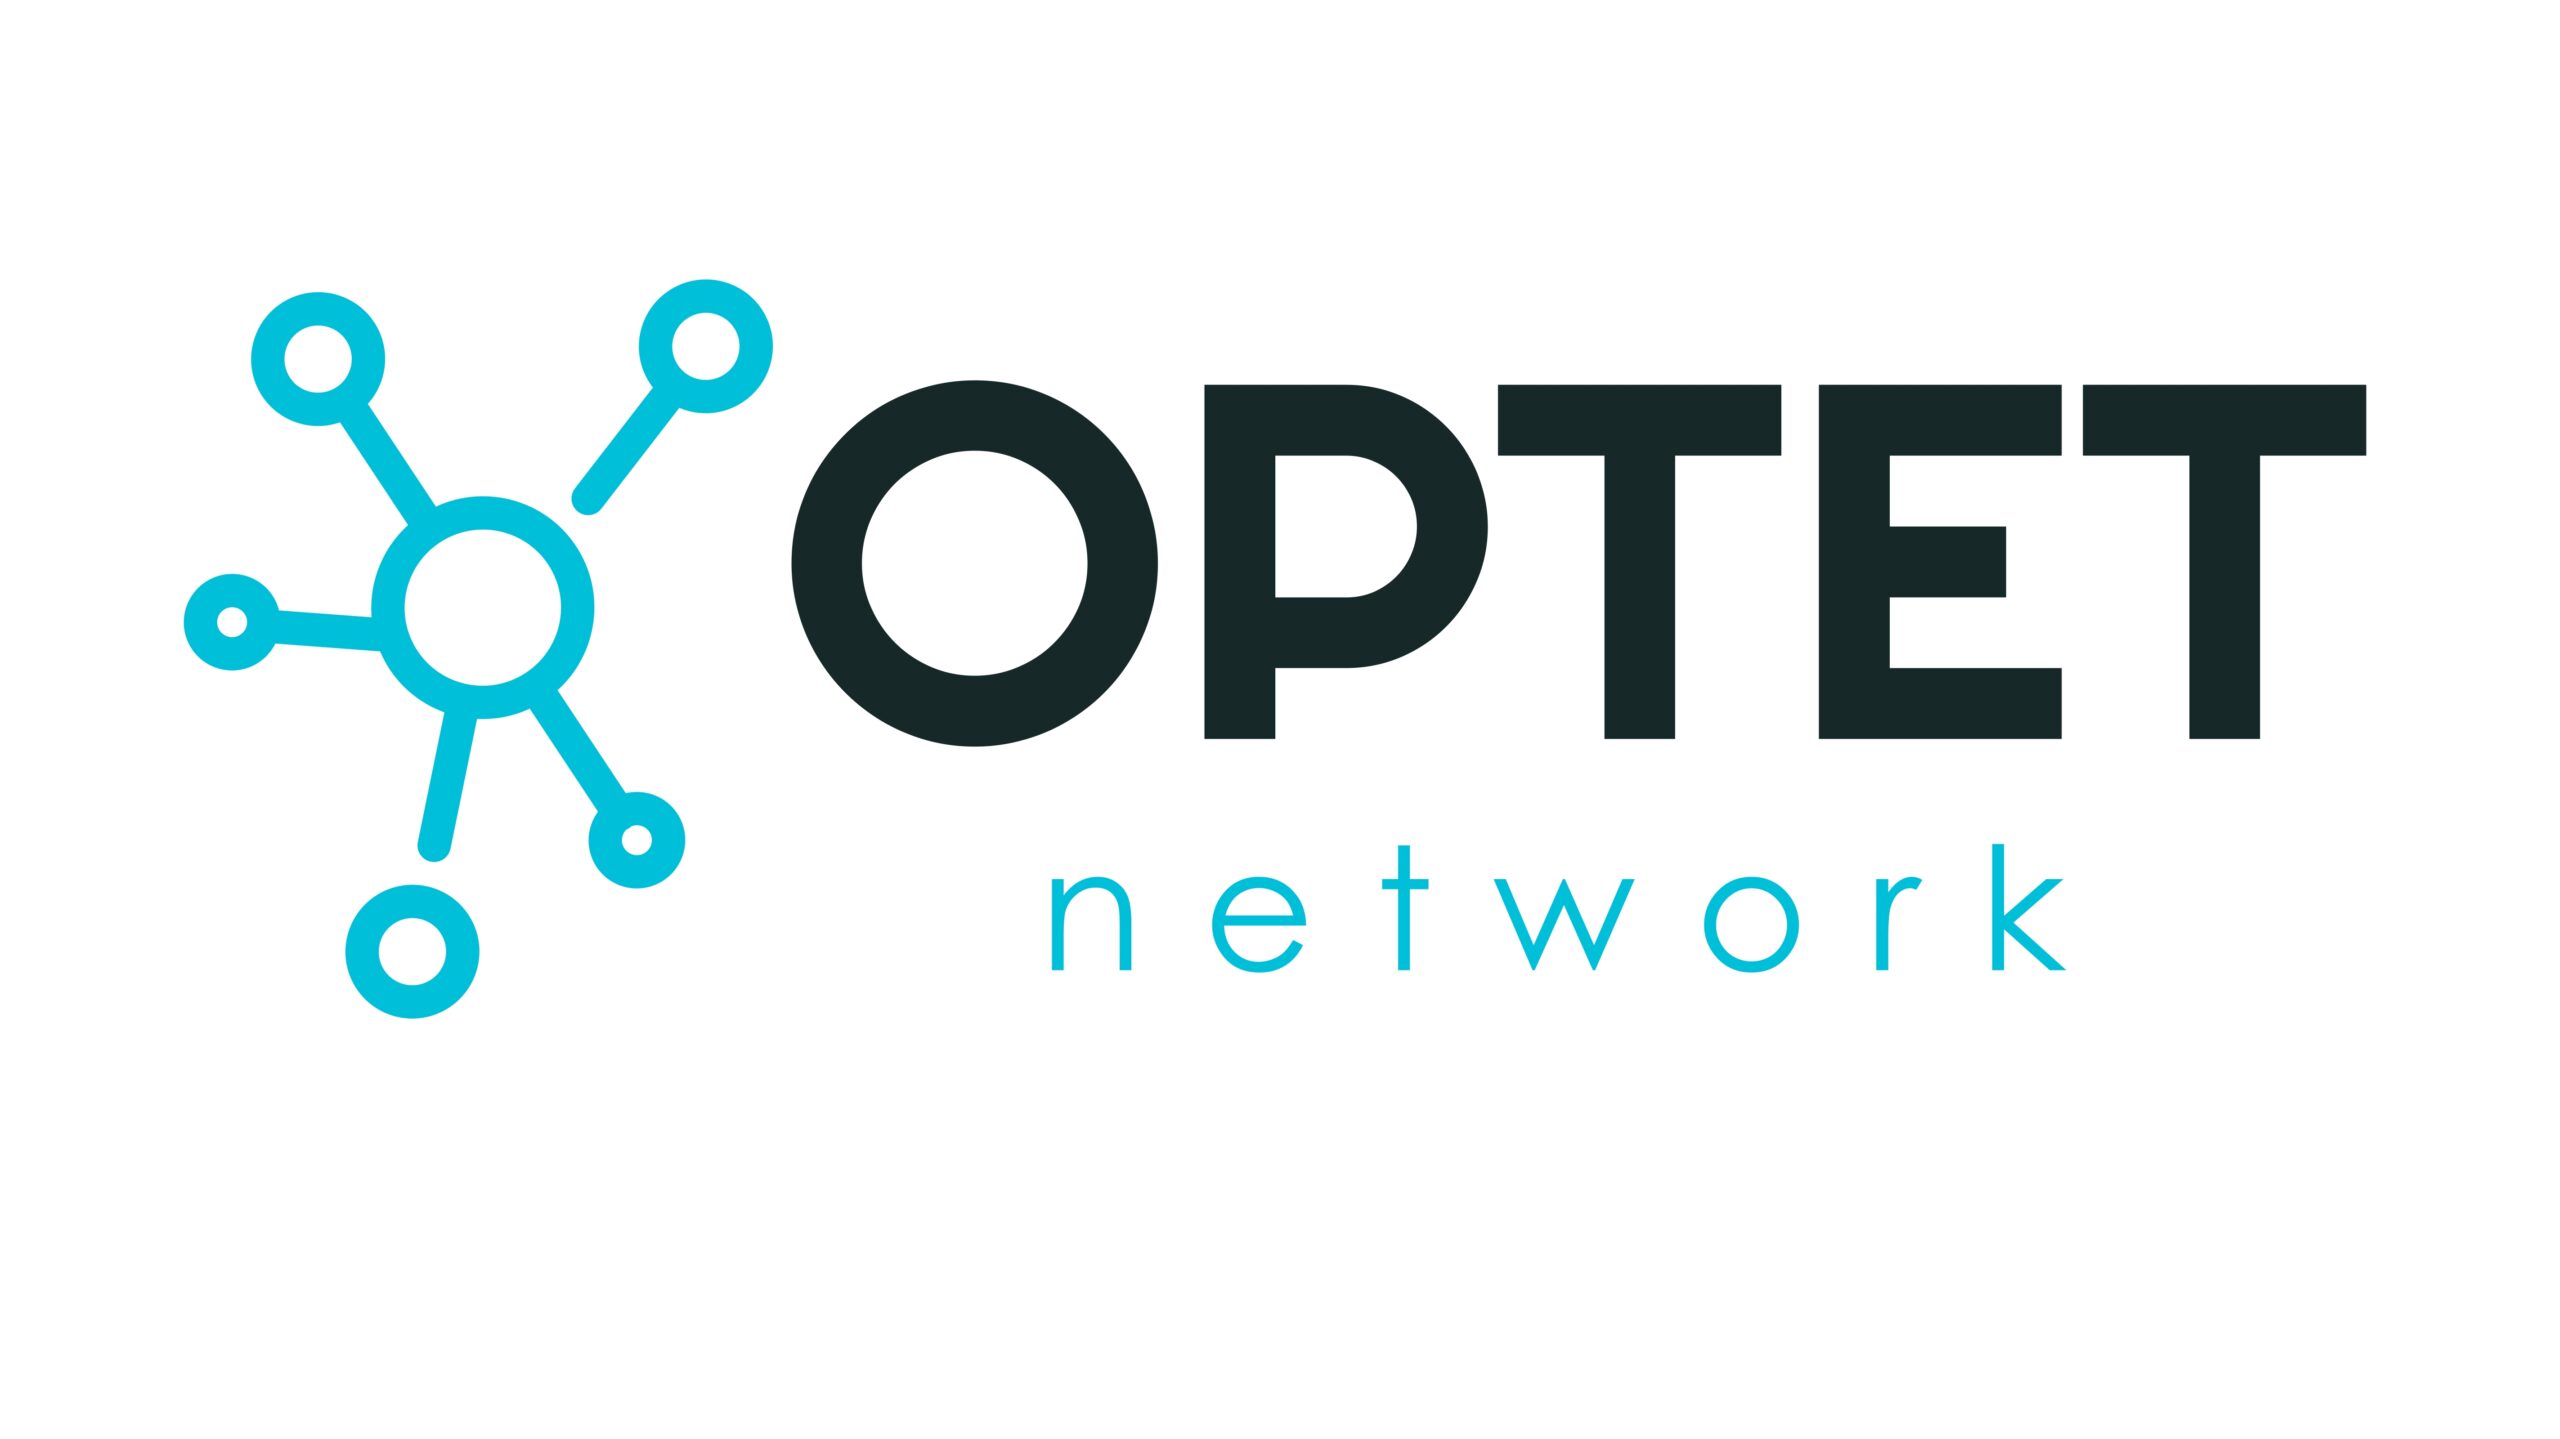 OPTET network